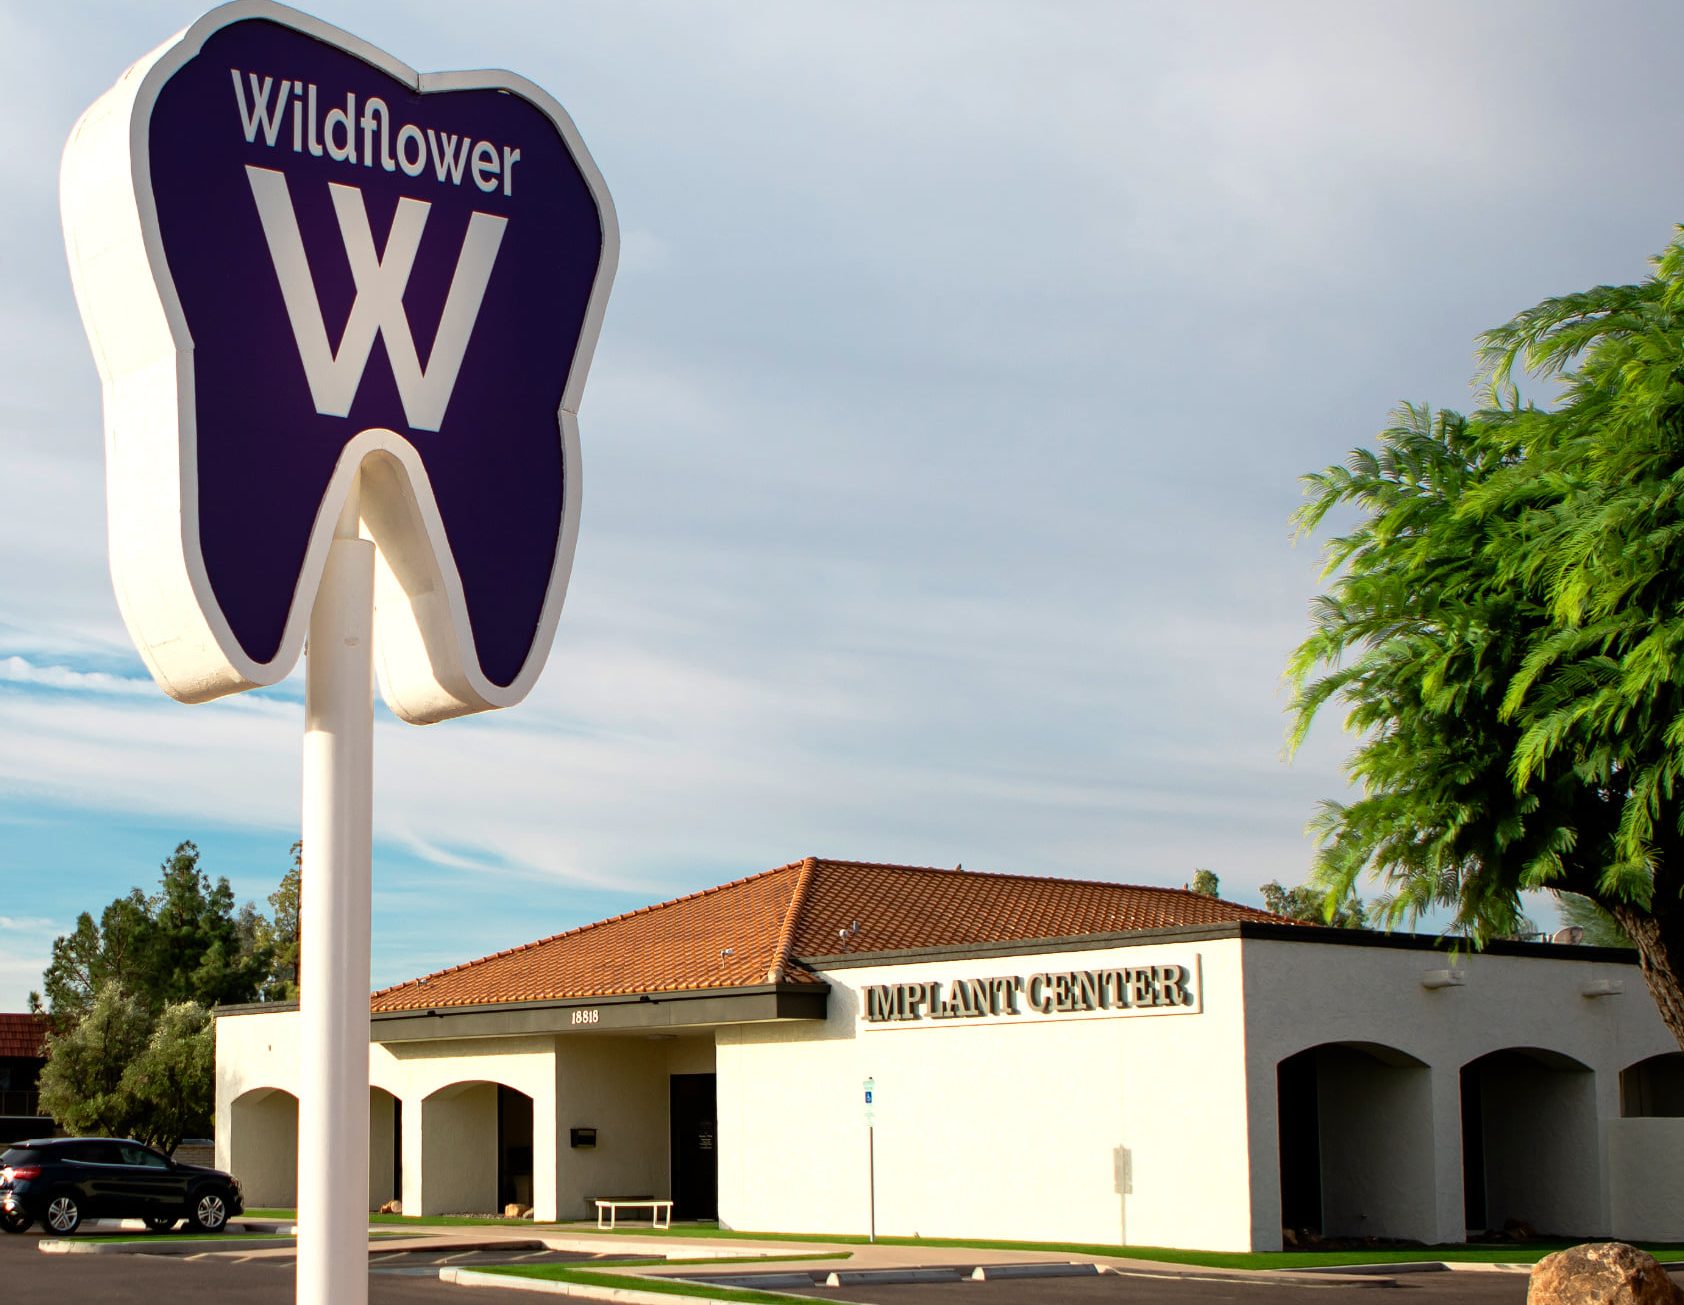 Wildflower dental building